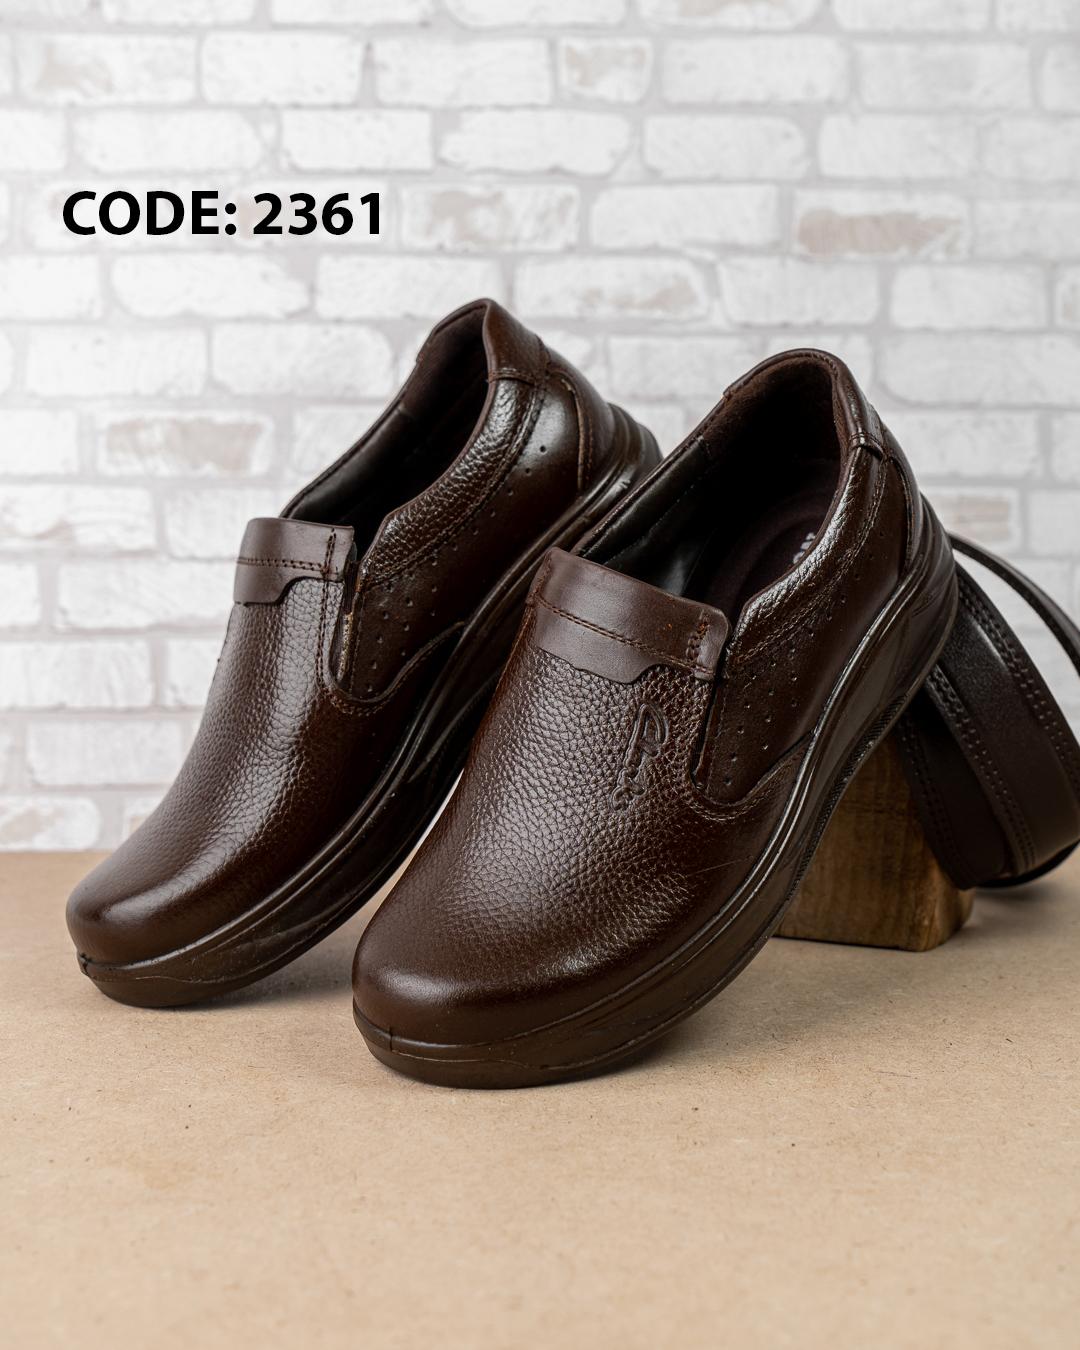  کفش مردانه بدون بند چرمی تمام قهوه ای سوخته Clarks 2361 